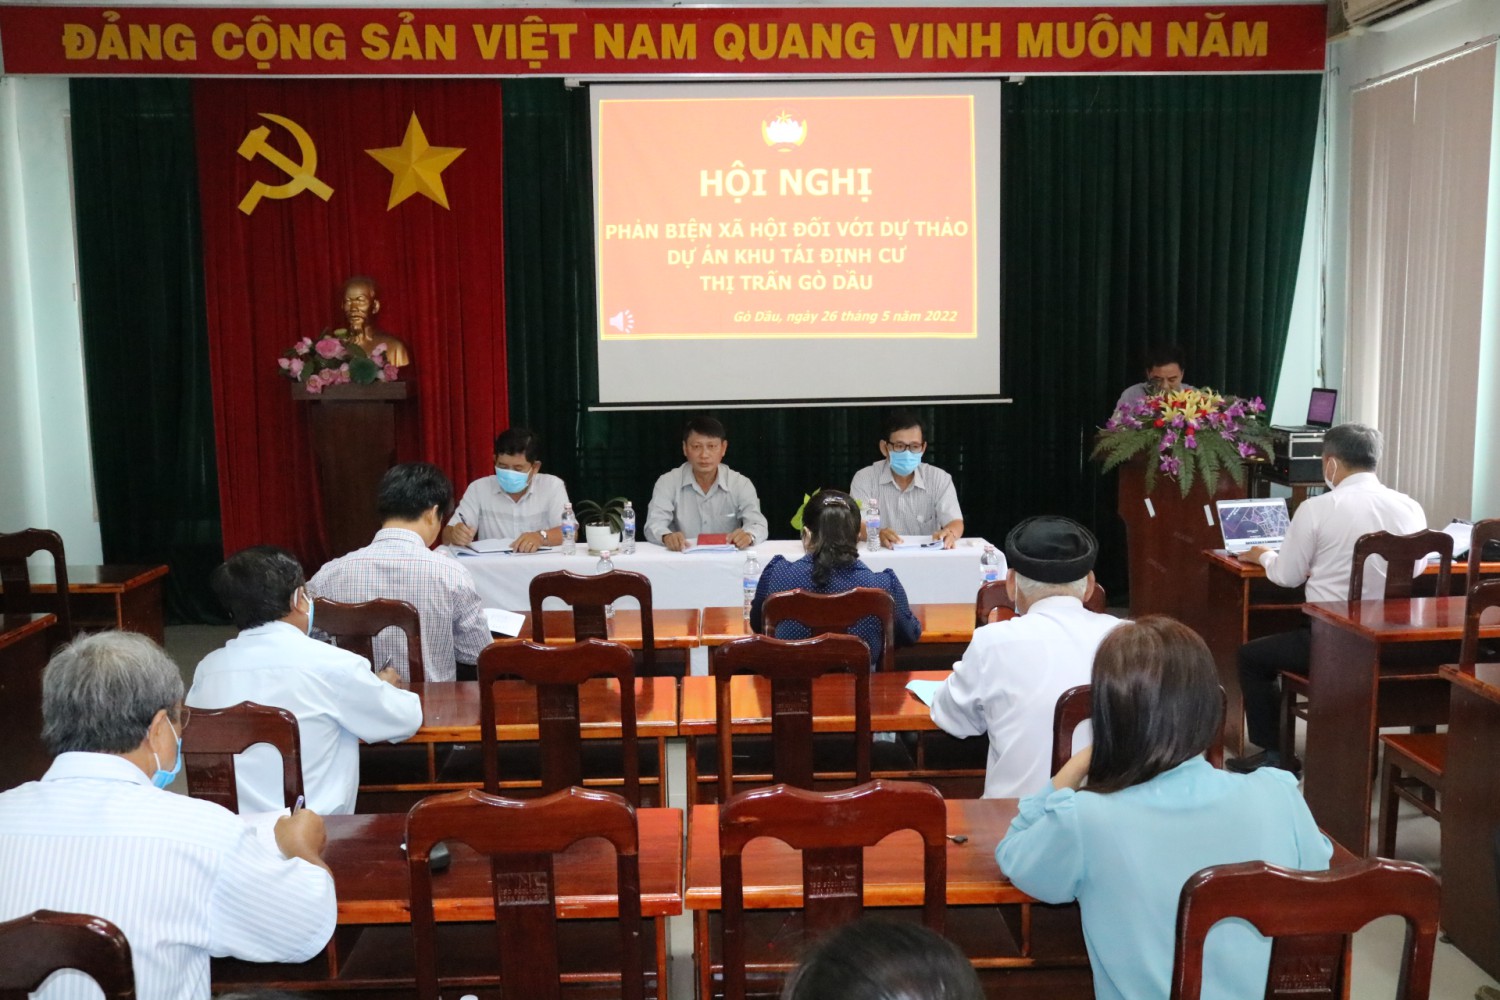 Ủy ban Mặt trận Tổ quốc Việt Nam huyện Gò Dầu tổ chức hội nghị phản biện xã hội dự thảo “Dự án khu tái định cư thị trấn Gò Dầu”